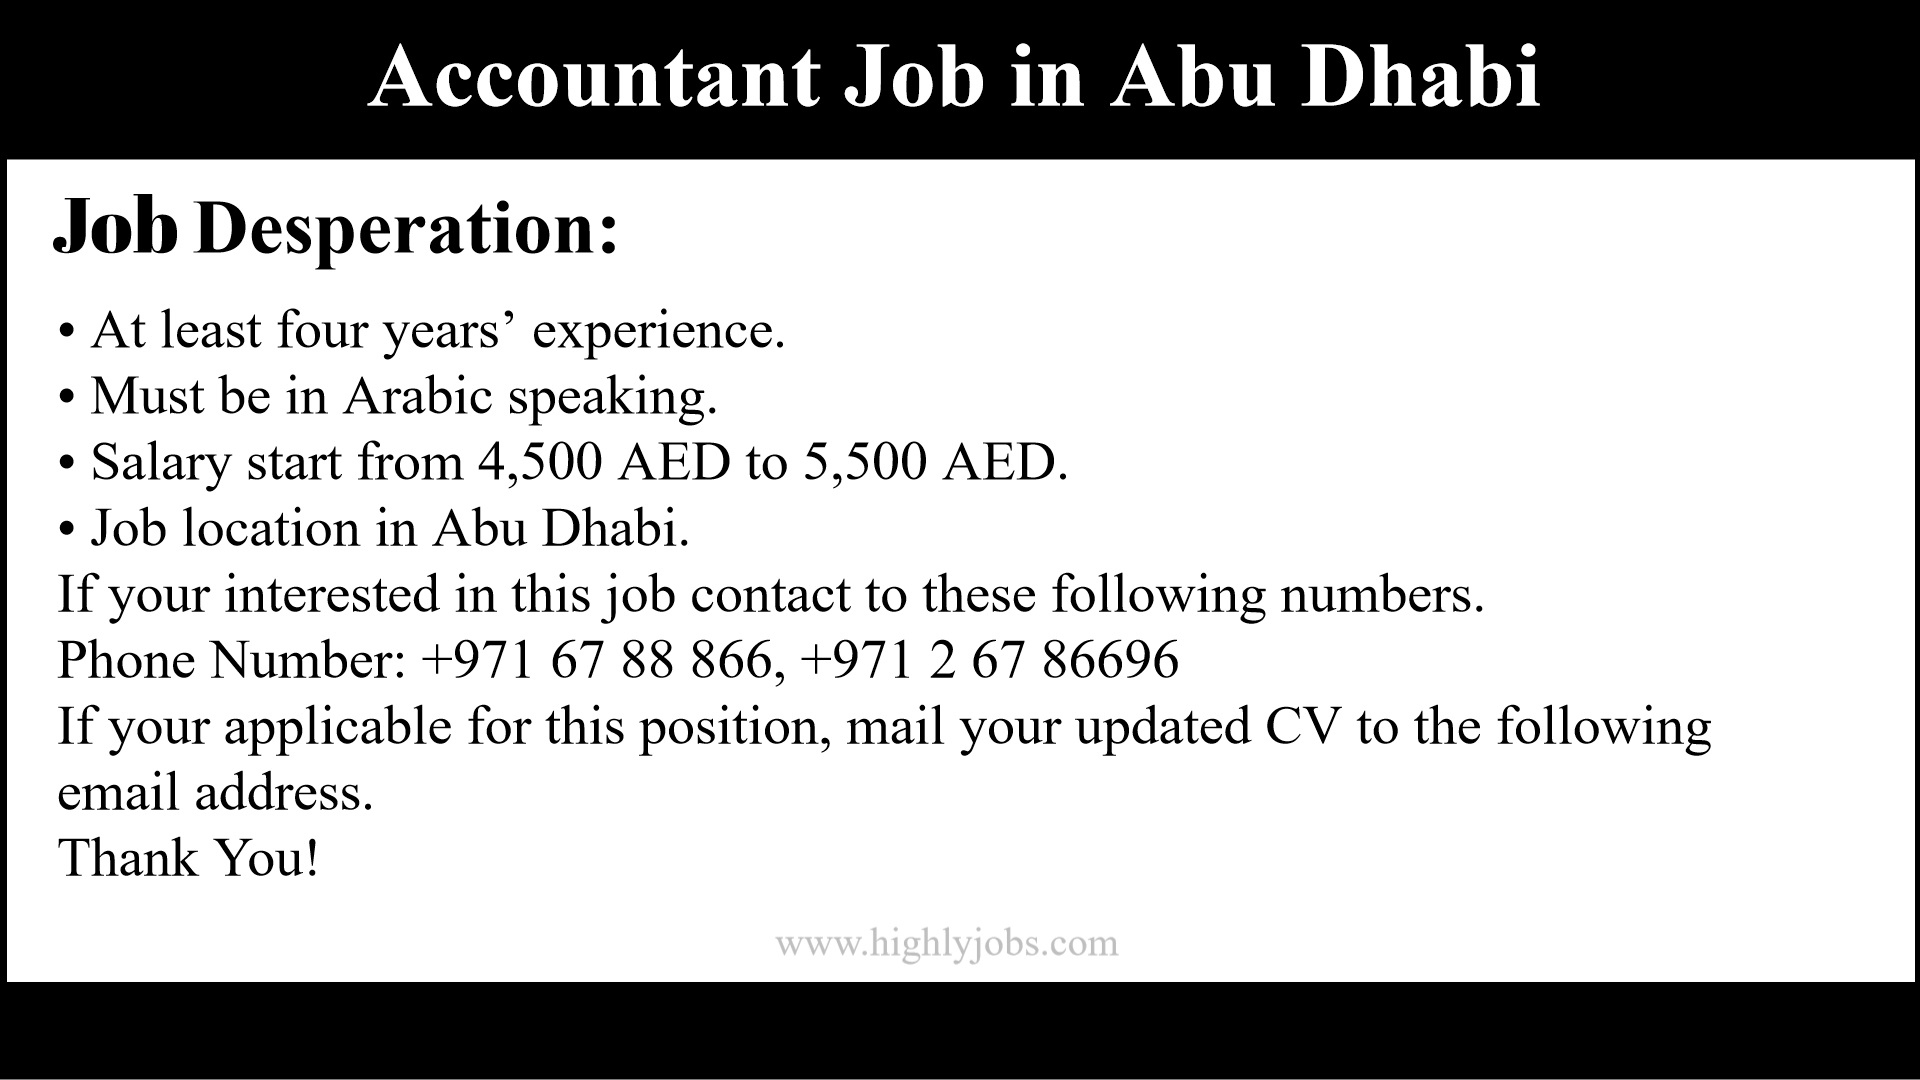 Accountant Job in Abu Dhabi